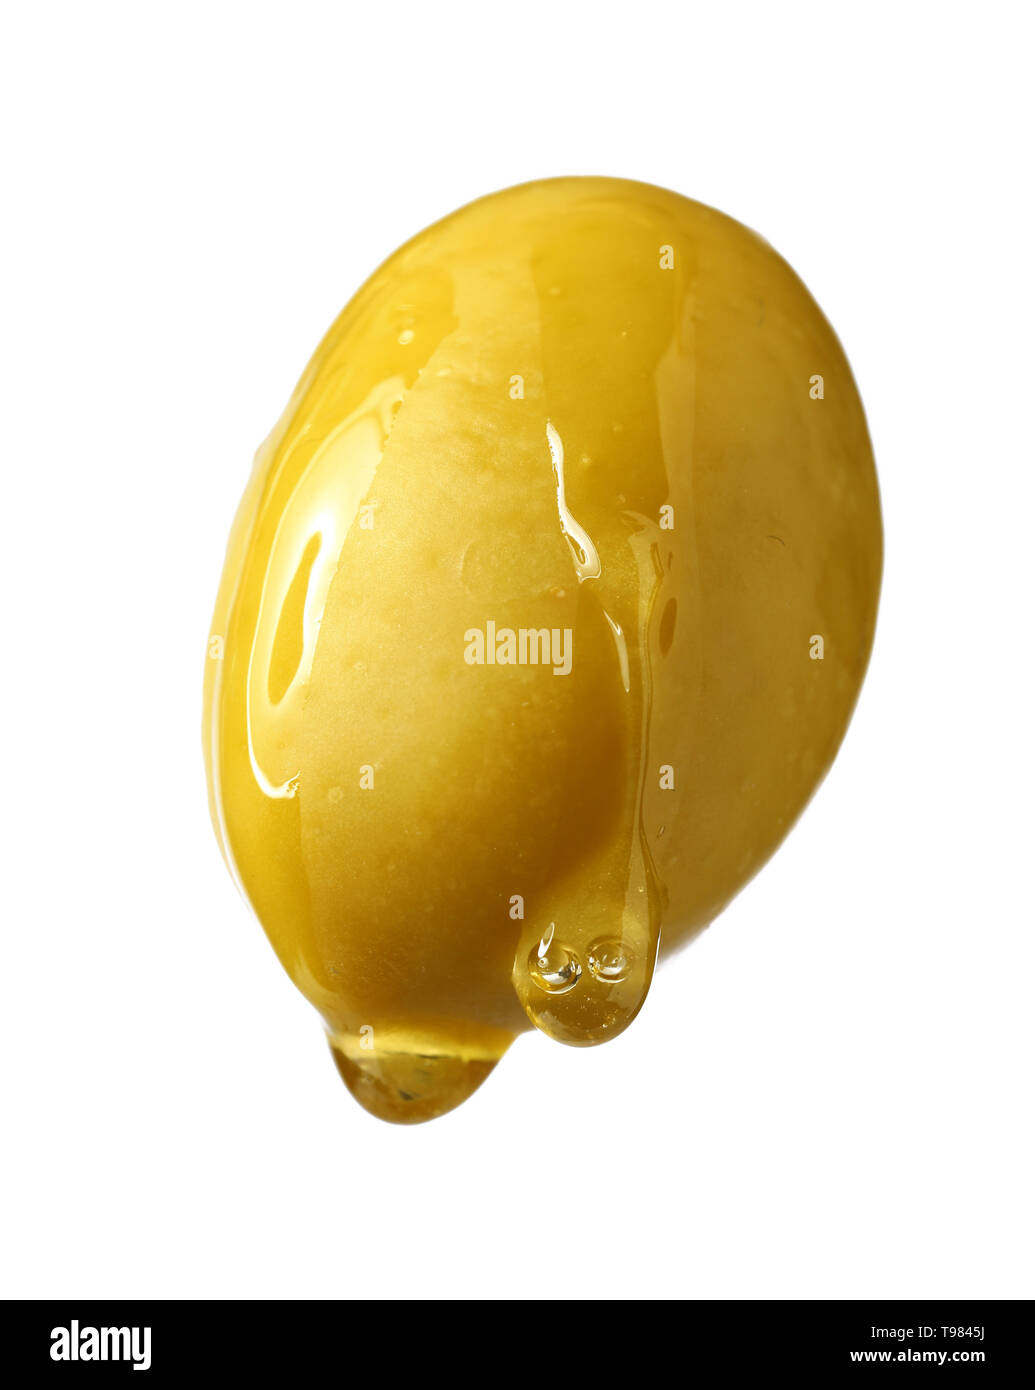 Öl tropft vom Olivenöl auf weißem Hintergrund Stockfoto